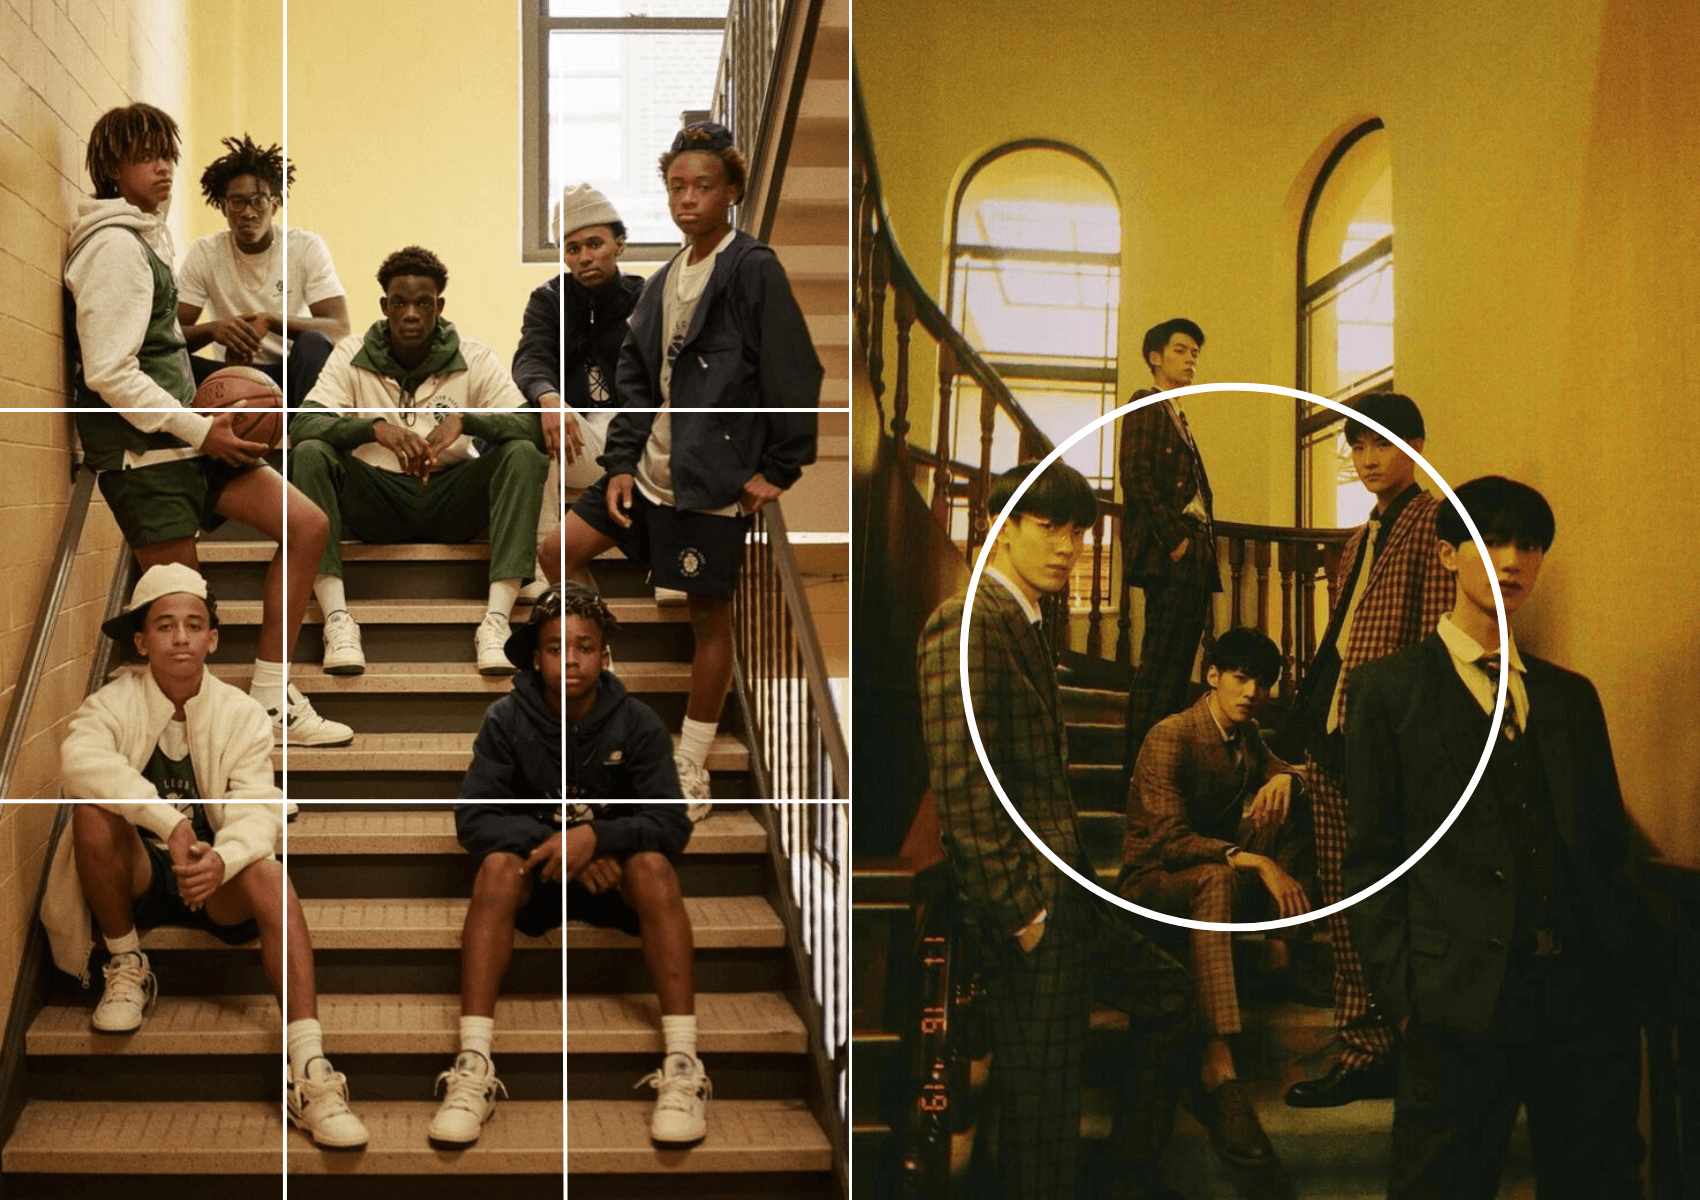 групповой портрет на лестнице в школе